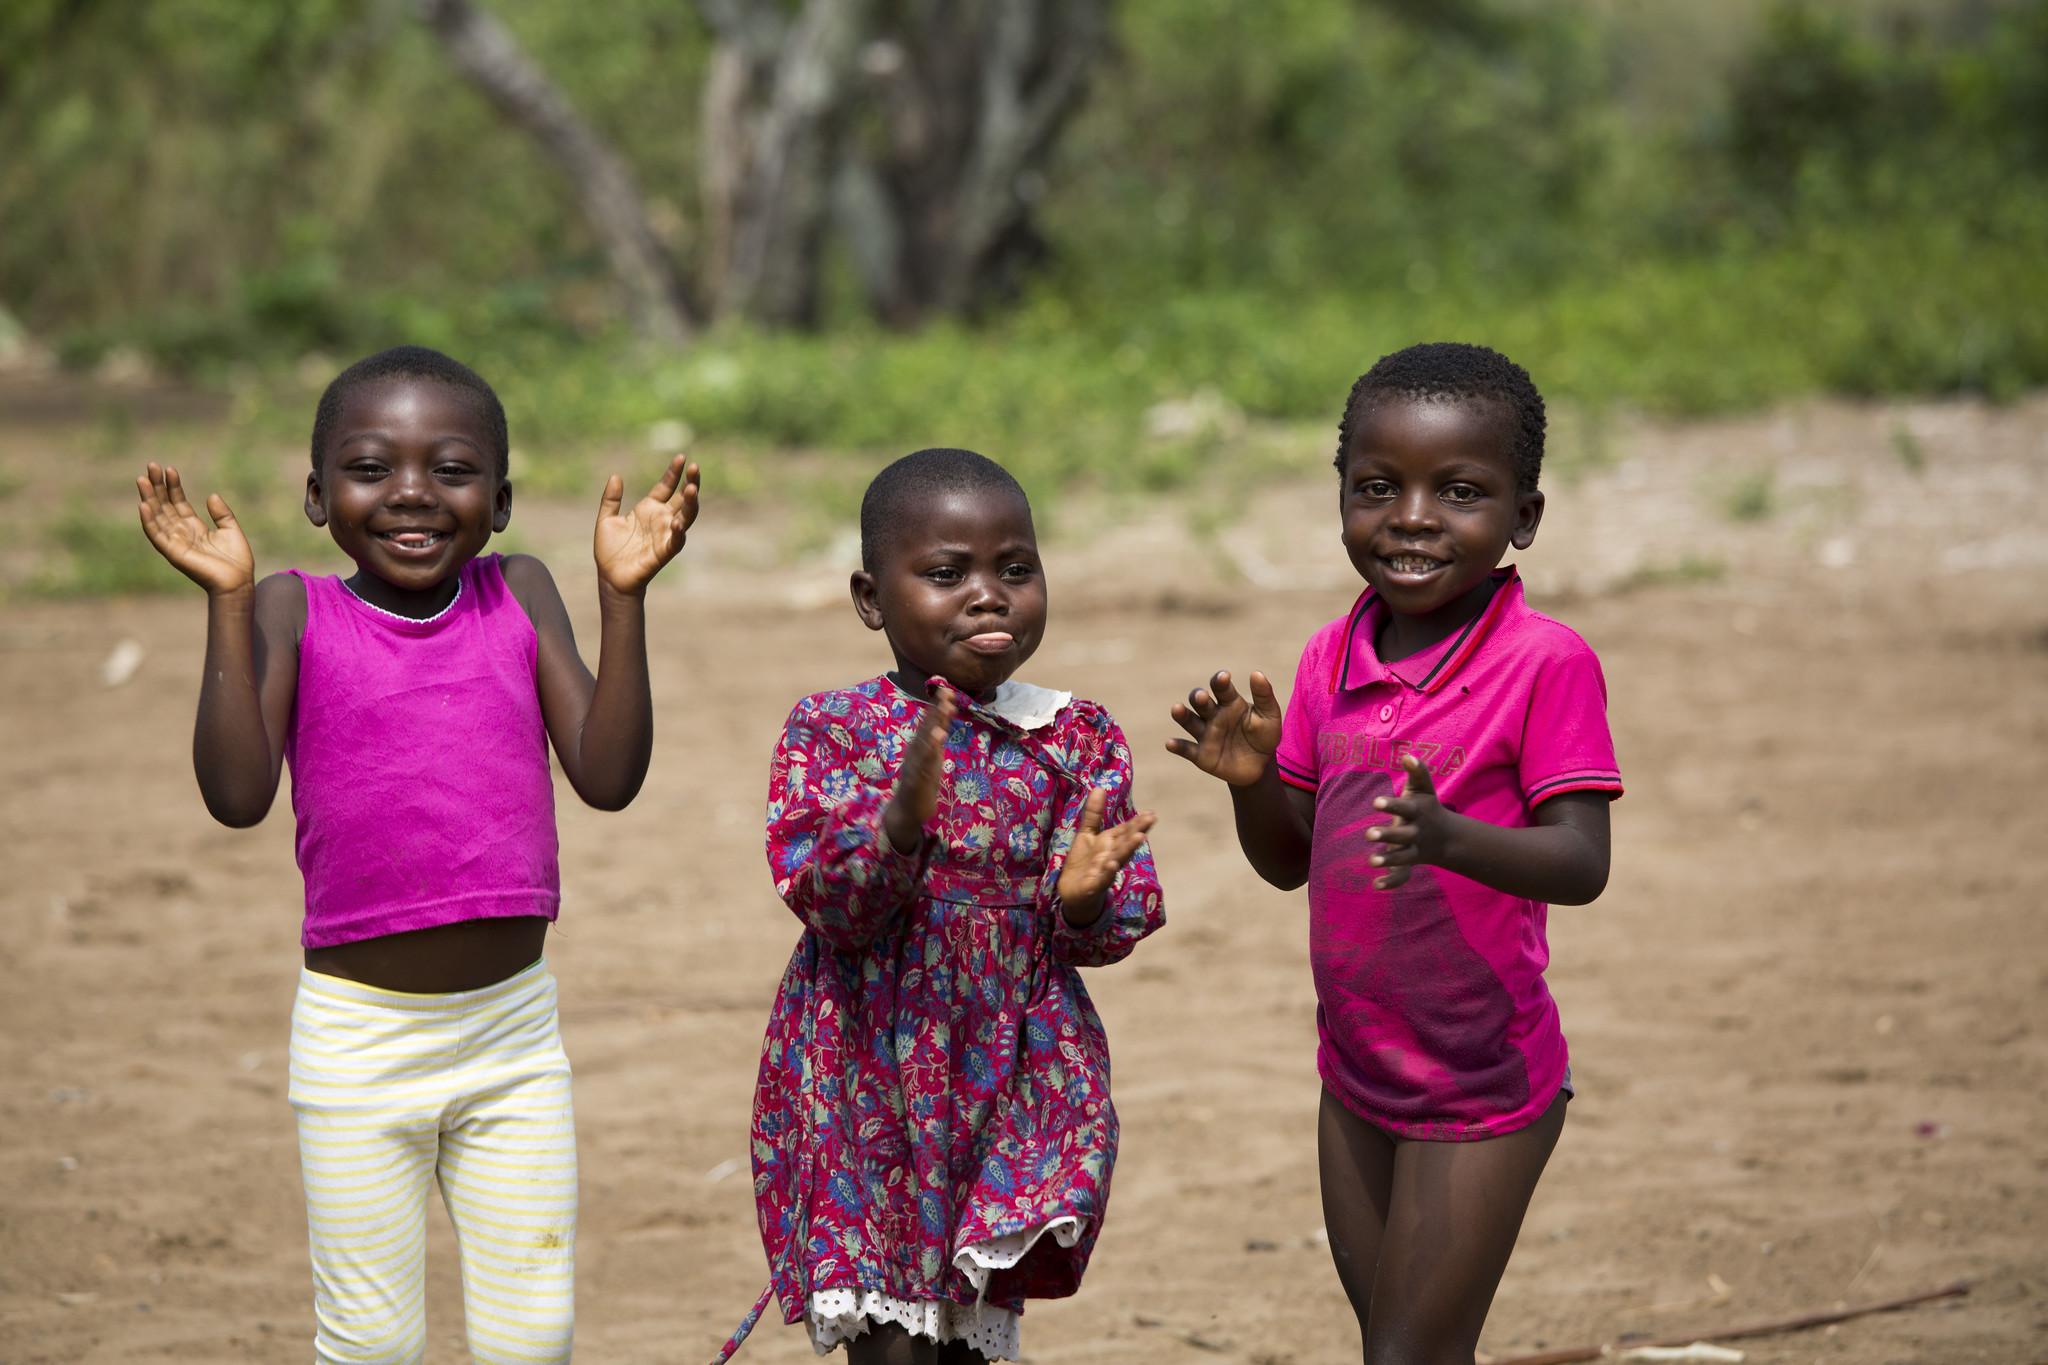 DRC children enjoying themselves